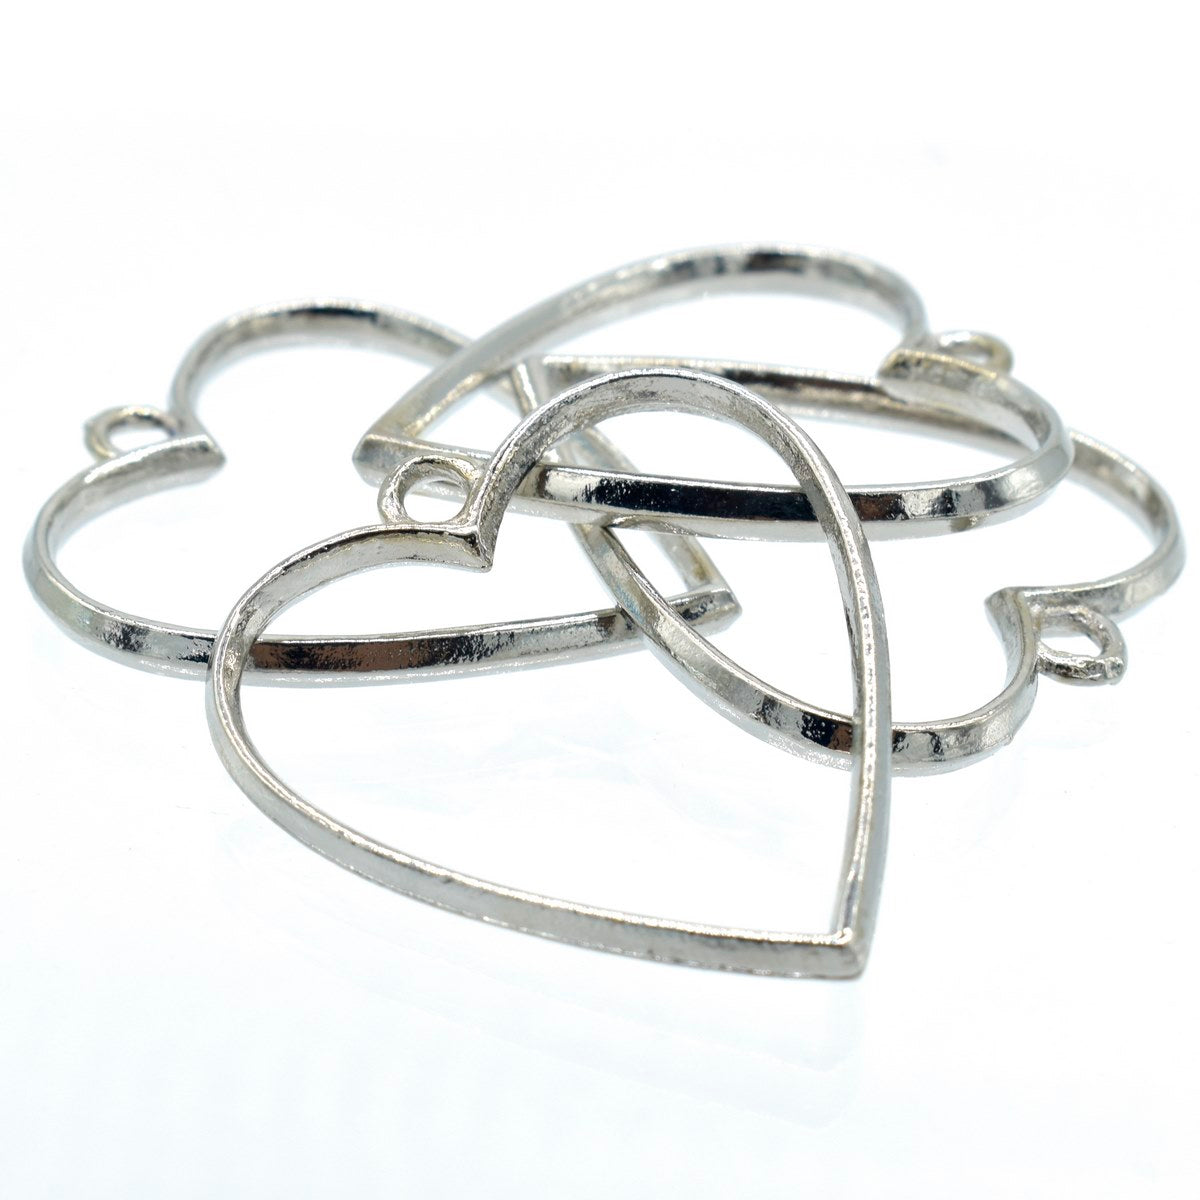 jags-mumbai Jewellery Diy Metal Imitation 4Pcs Heart Silver JRDA09